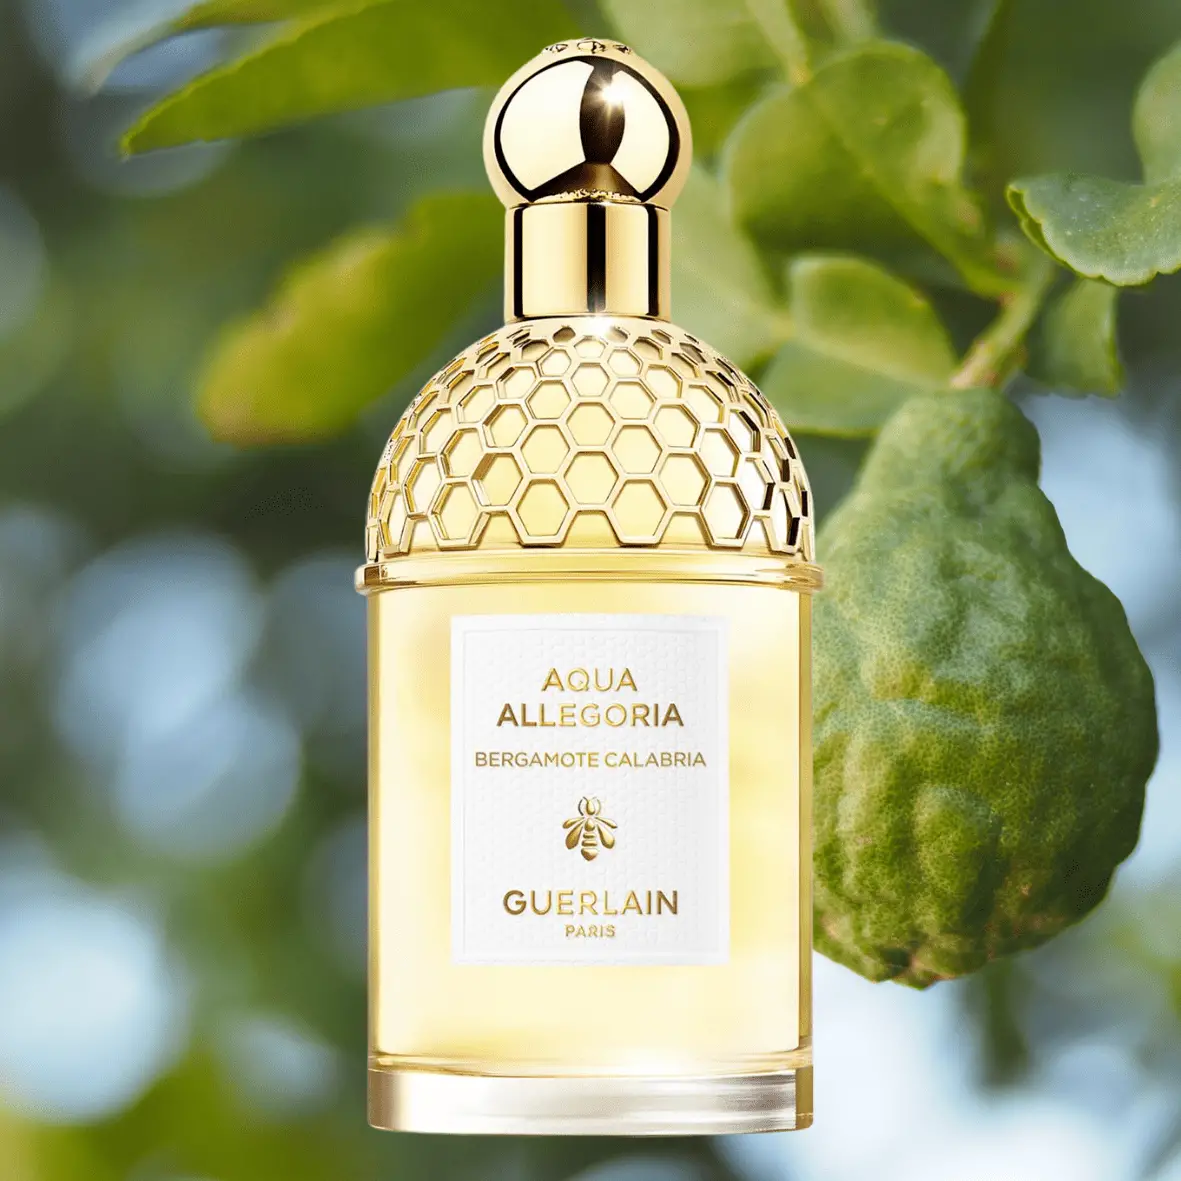 Guerlain Aqua Allegoria Bergamote Calabria 最佳佛手柑男士和女士香水